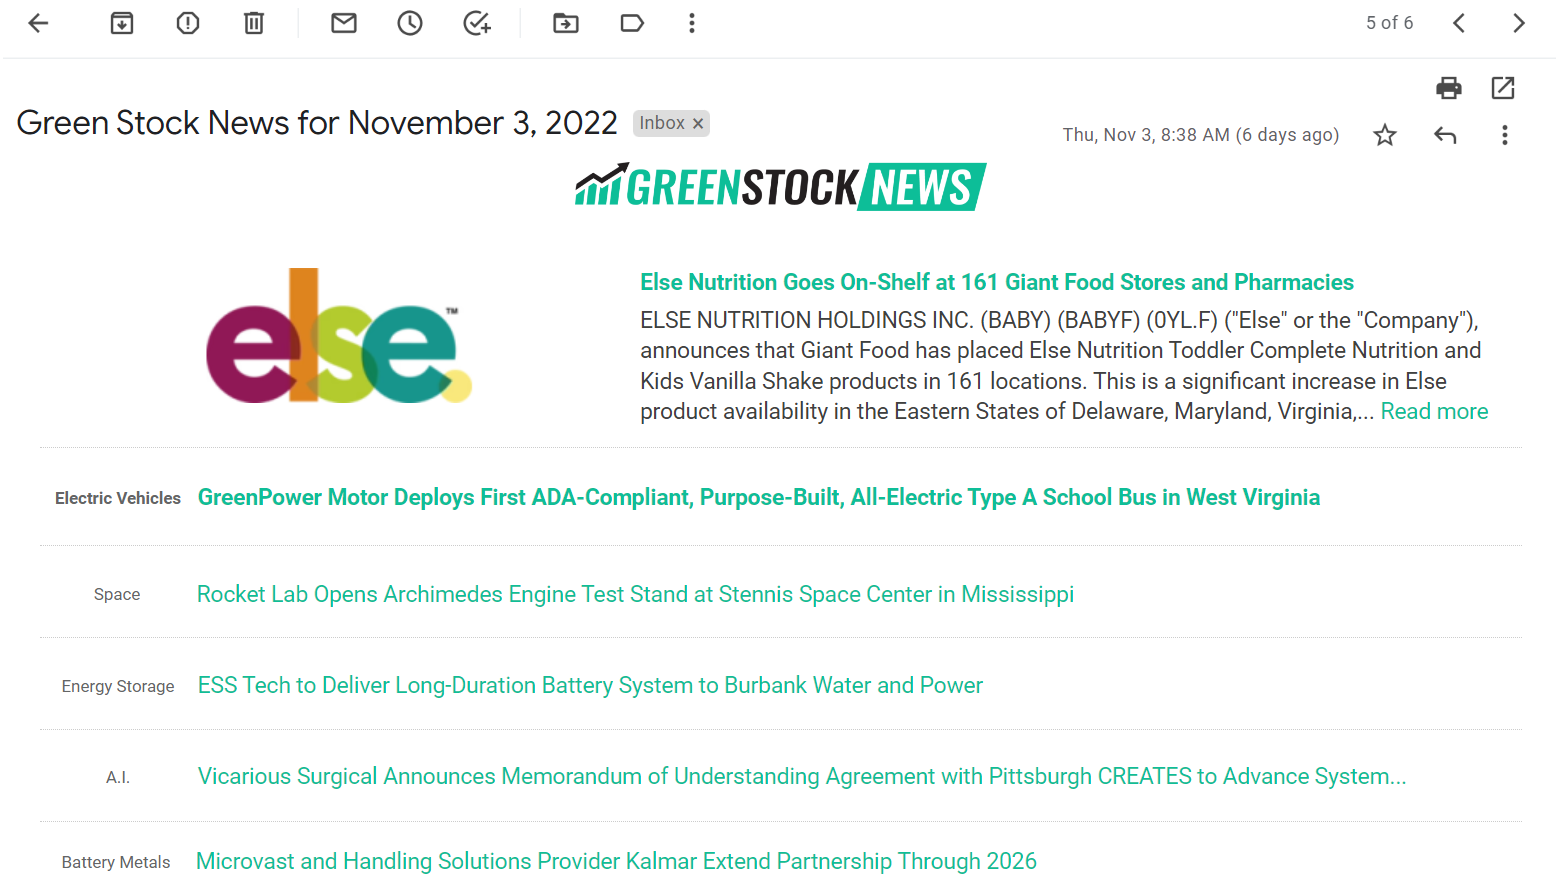 Green Stock News Daily Morning Newsletter